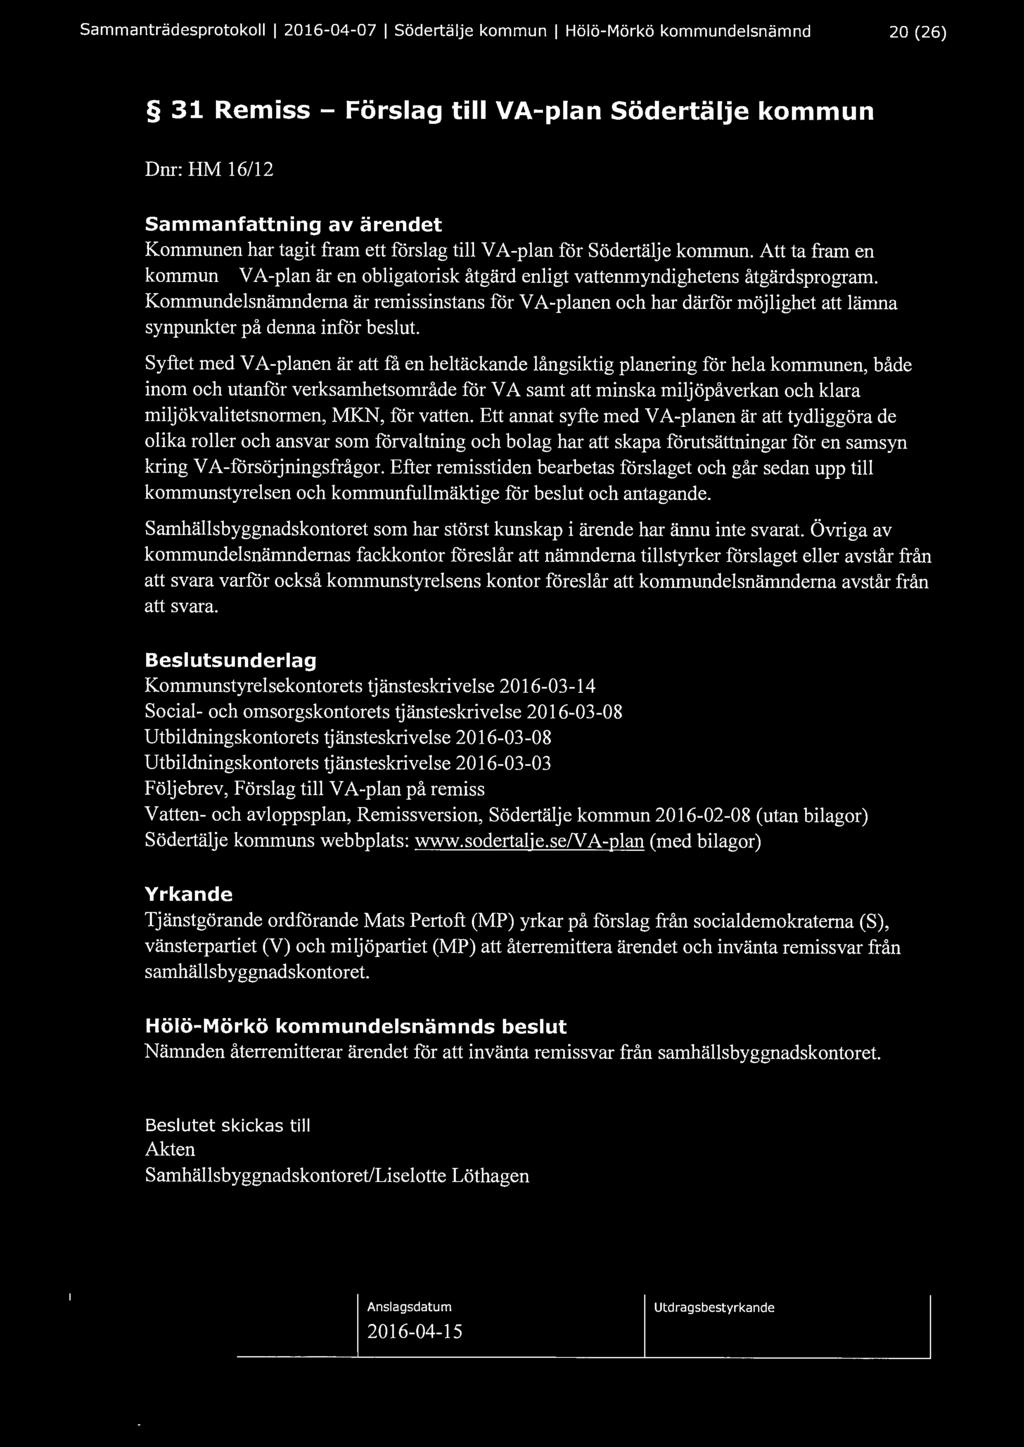 Sammanträdesprotokoll l 2016-04-07 l Södertälje kommun l Hölö-Mörkö kommundelsnämnd 20 (26) 31 Remiss - Förslag till VA-plan södertälje kommun Dnr: HM 16/12 Kommunen har tagit fram ett förslag till